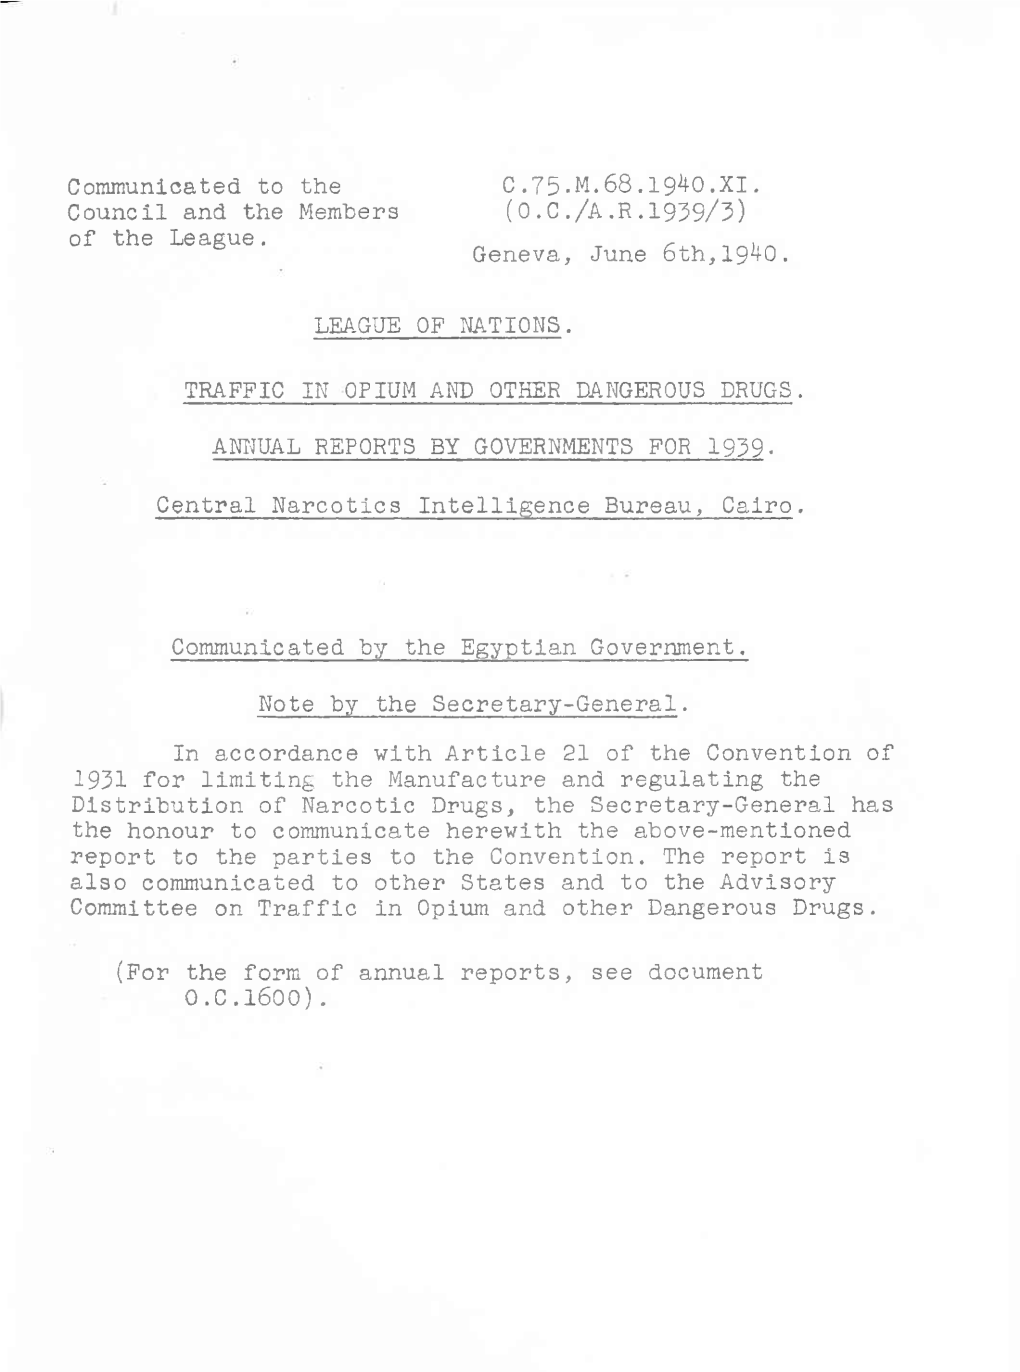 Abdel-Aziz Mohamed Gomma—Seizure of 952 Grammes of Opium at Alexandria on J U Ly 20, 1939